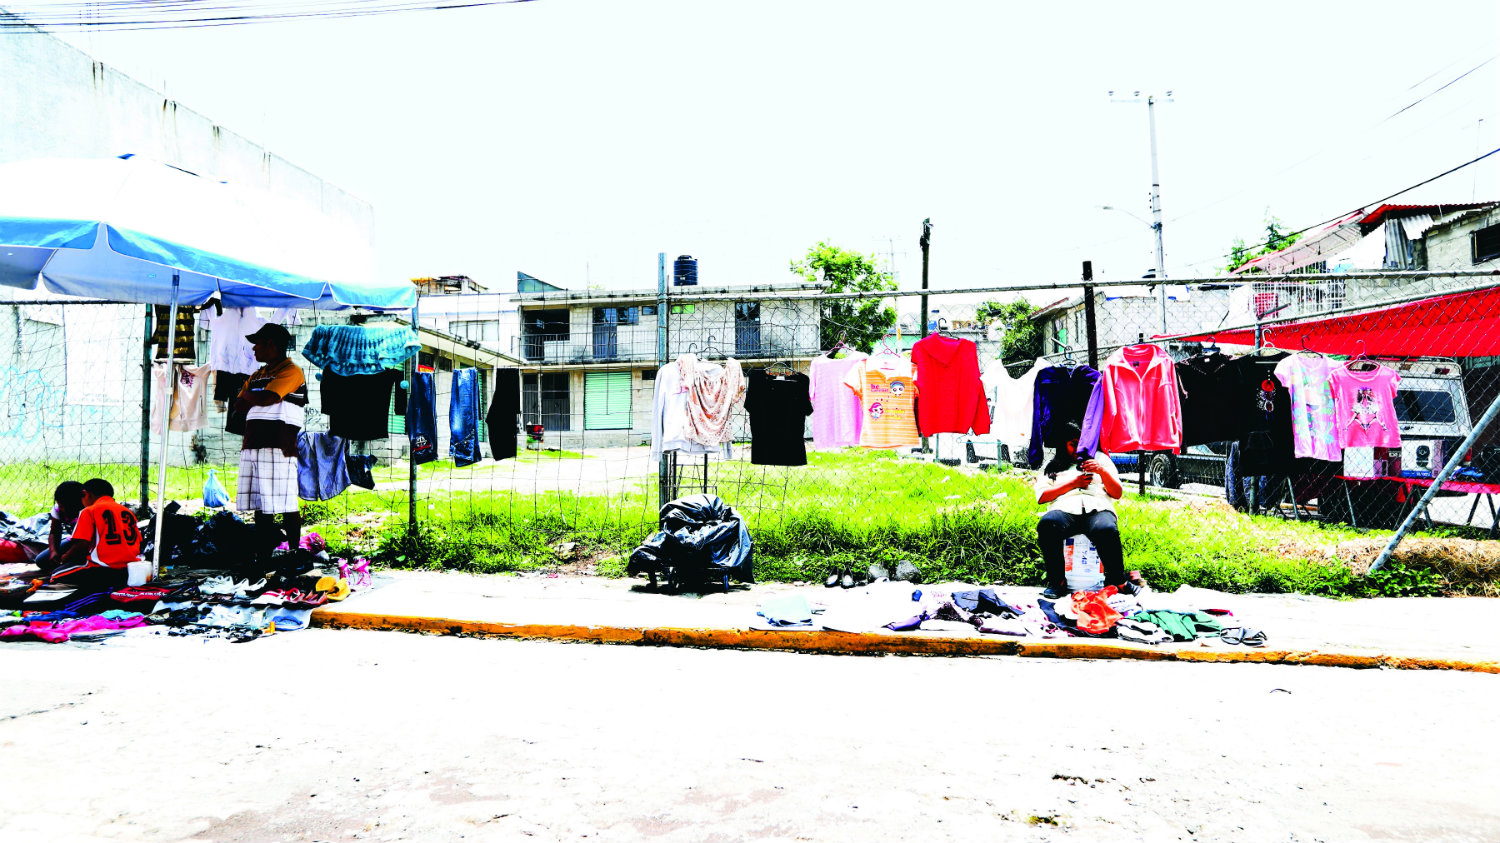 Conoce todo del negociazo de la ropa de paca en México | El Gráfico  Historias y noticias en un solo lugar